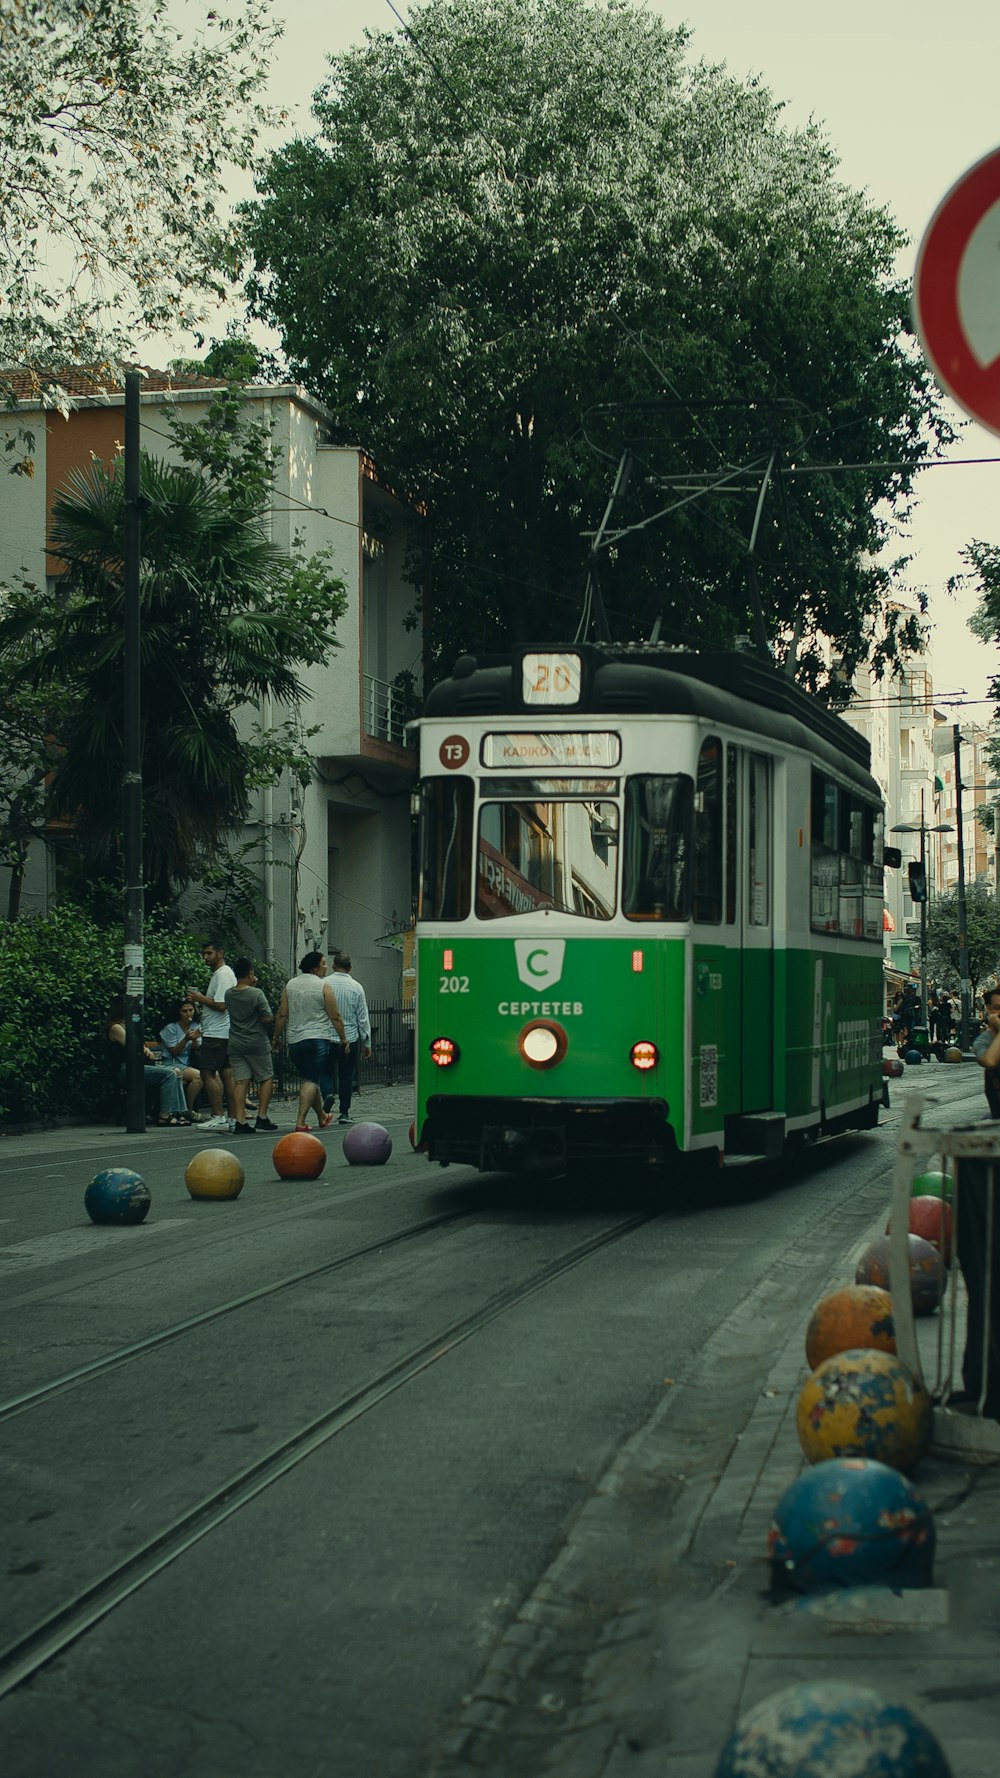 Un chariot vert et blanc roulant dans une rue